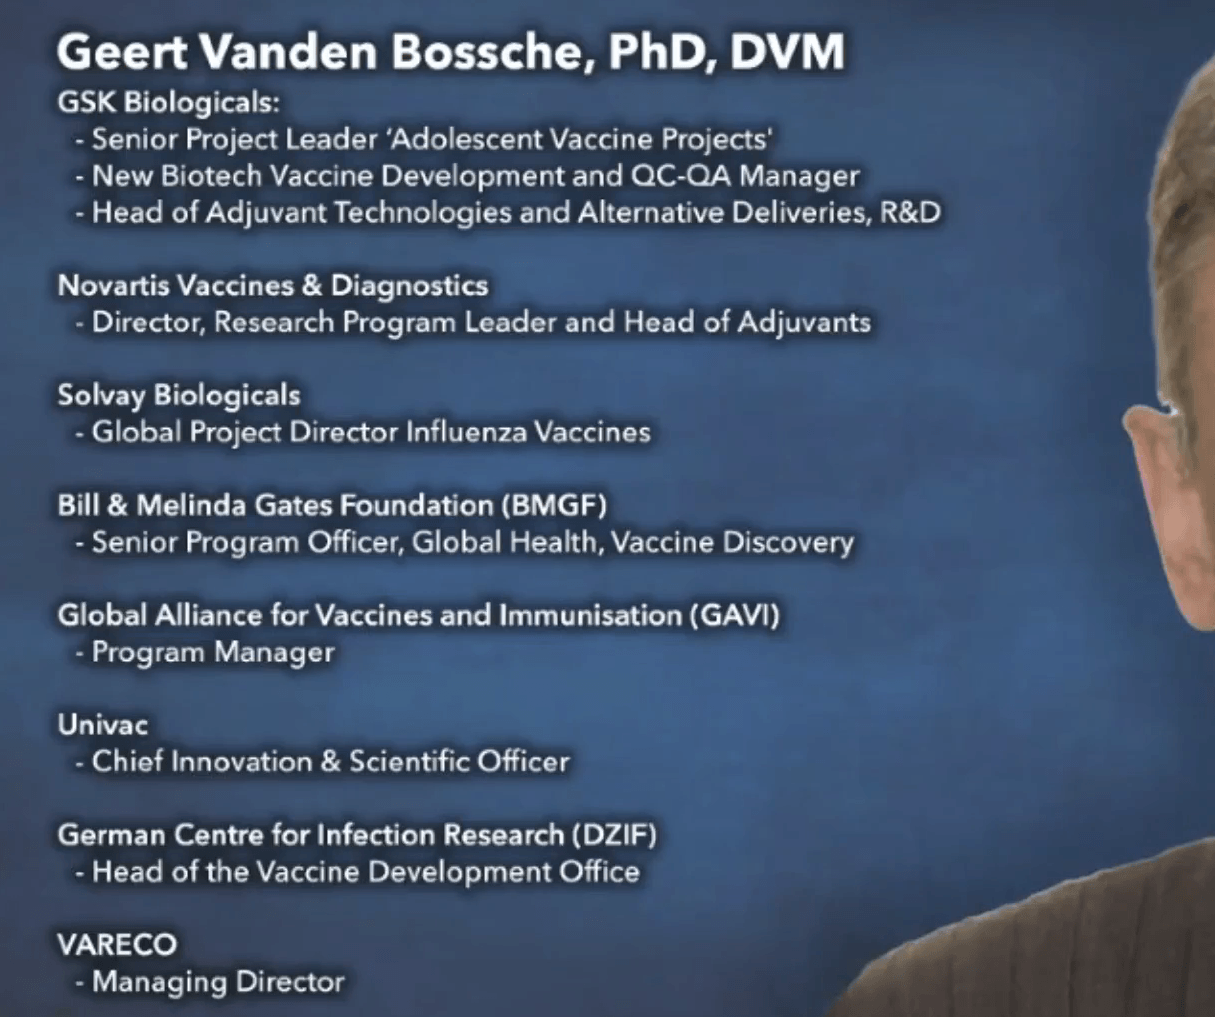 Geert-Vanden-Bossche-bio.png